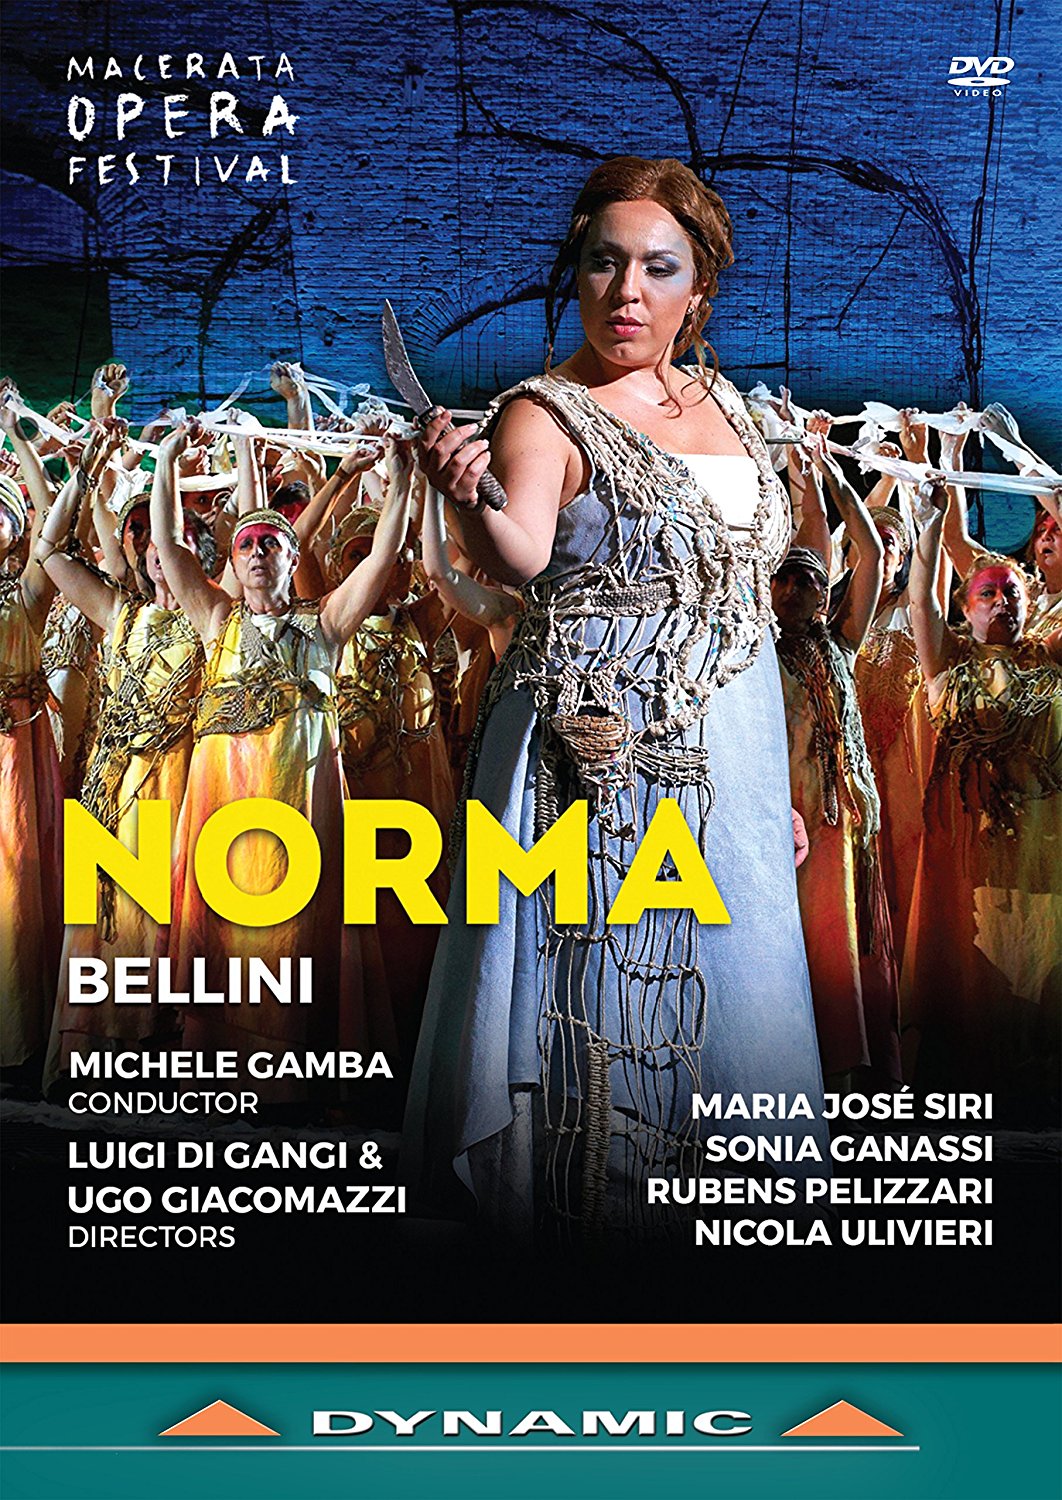 Music Dvd Vincenzo Bellini - Norma NUOVO SIGILLATO EDIZIONE DEL SUBITO DISPONIBILE